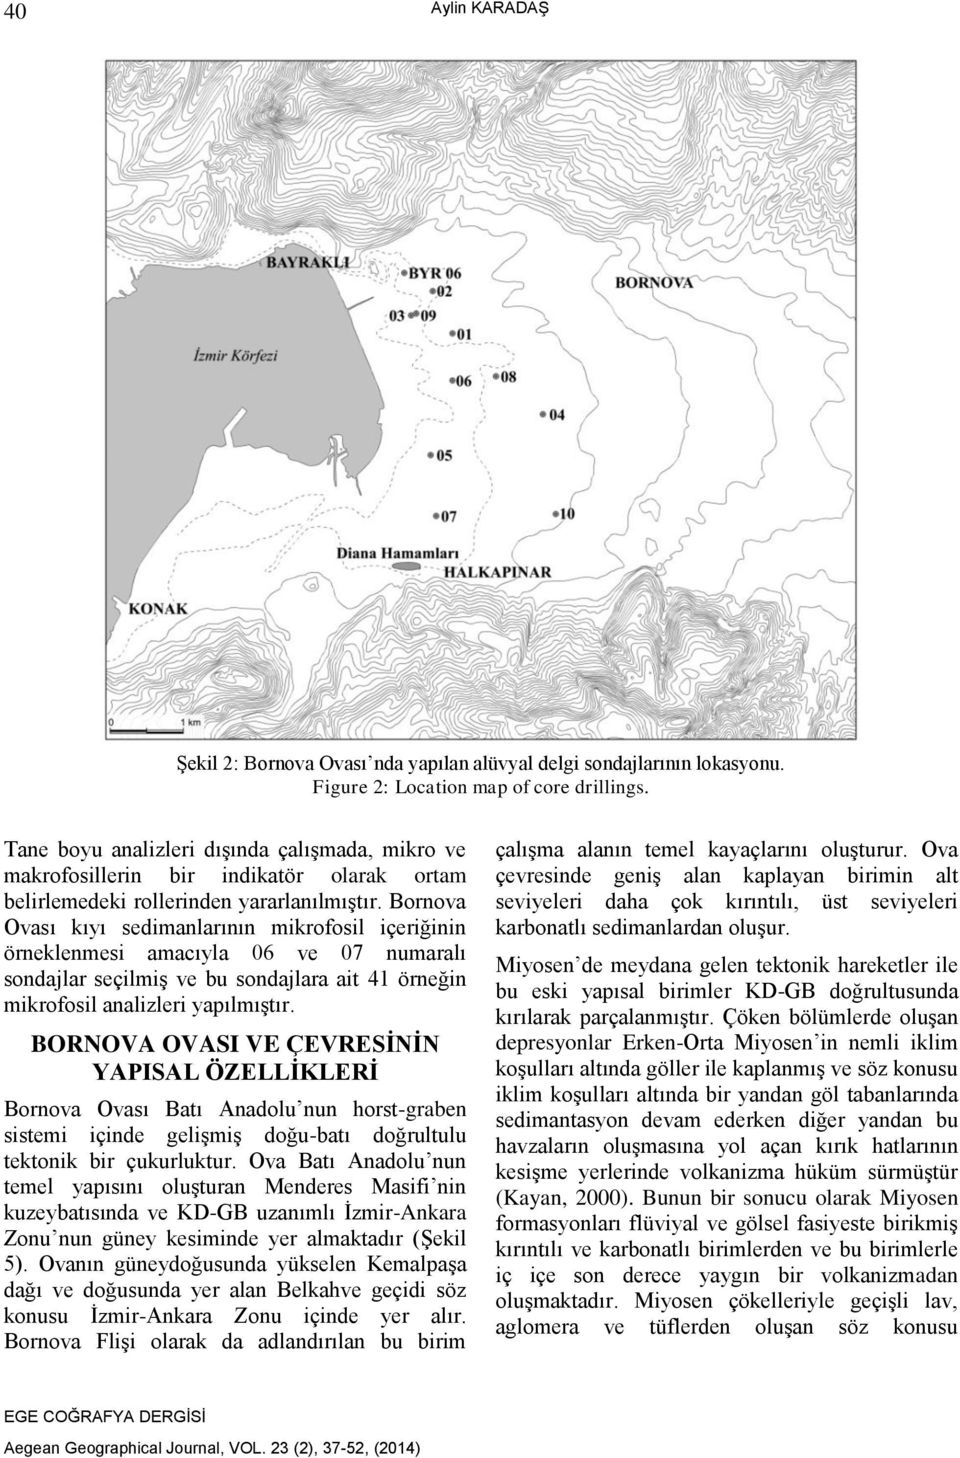 Bornova Ovası kıyı sedimanlarının mikrofosil içeriğinin örneklenmesi amacıyla 06 ve 07 numaralı sondajlar seçilmiş ve bu sondajlara ait 41 örneğin mikrofosil analizleri yapılmıştır.